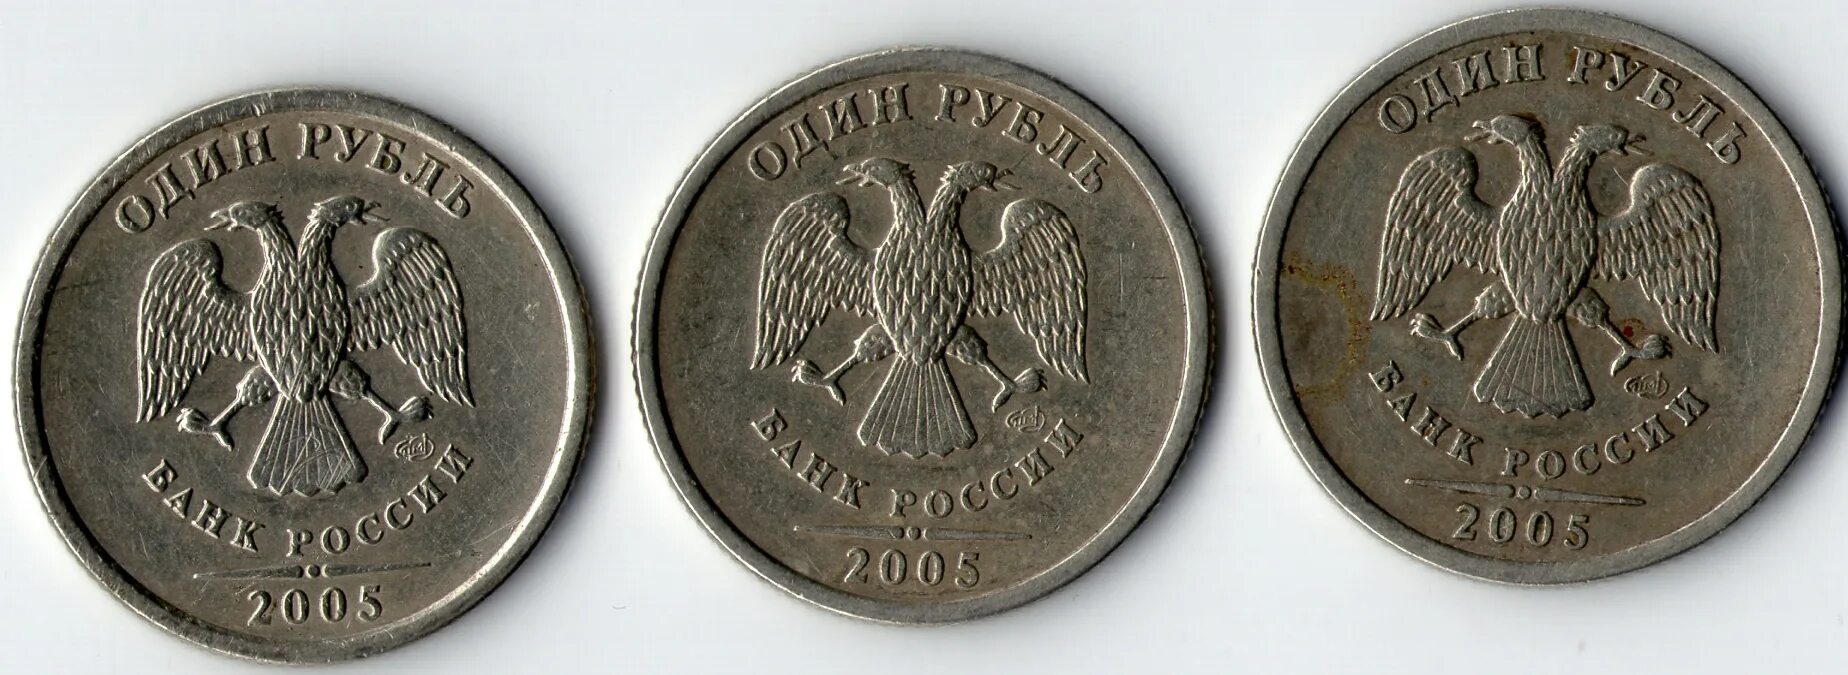 Редкие монеты 1 рубль 2005 года СПМД. СПМД на монетах 1 рублей 2005. 1 Руб 2005 года Санкт-Петербургского монетного двора. Рубль 2005 года Санкт Петербургский монетный двор.